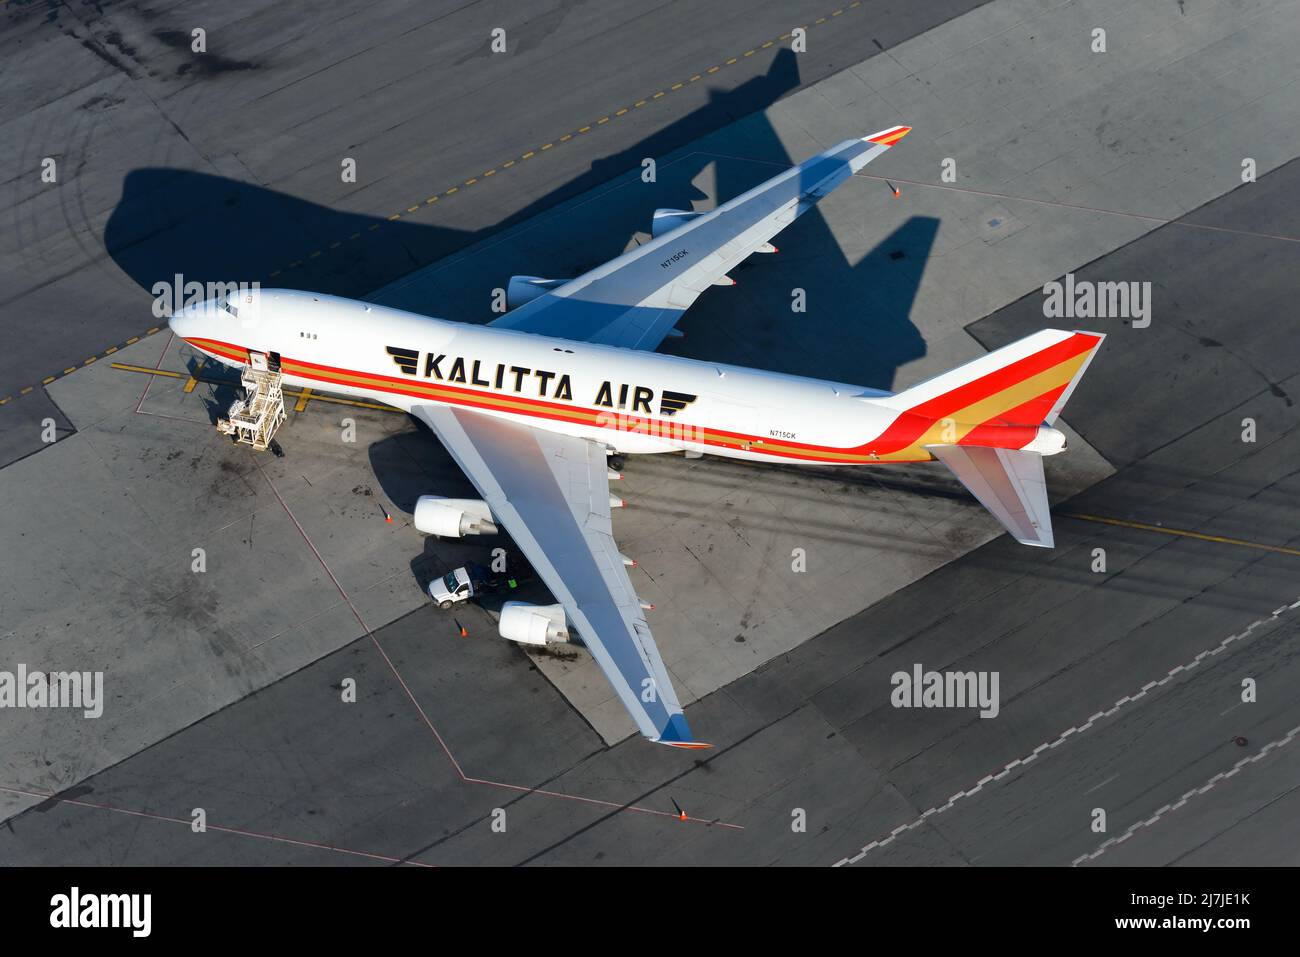 Kalitta Air Boeing 747 Frachtschiff geparkt. Großes Frachtflugzeug 747-400F von oben. Flugzeug 747F von Kalitta Air. Stockfoto